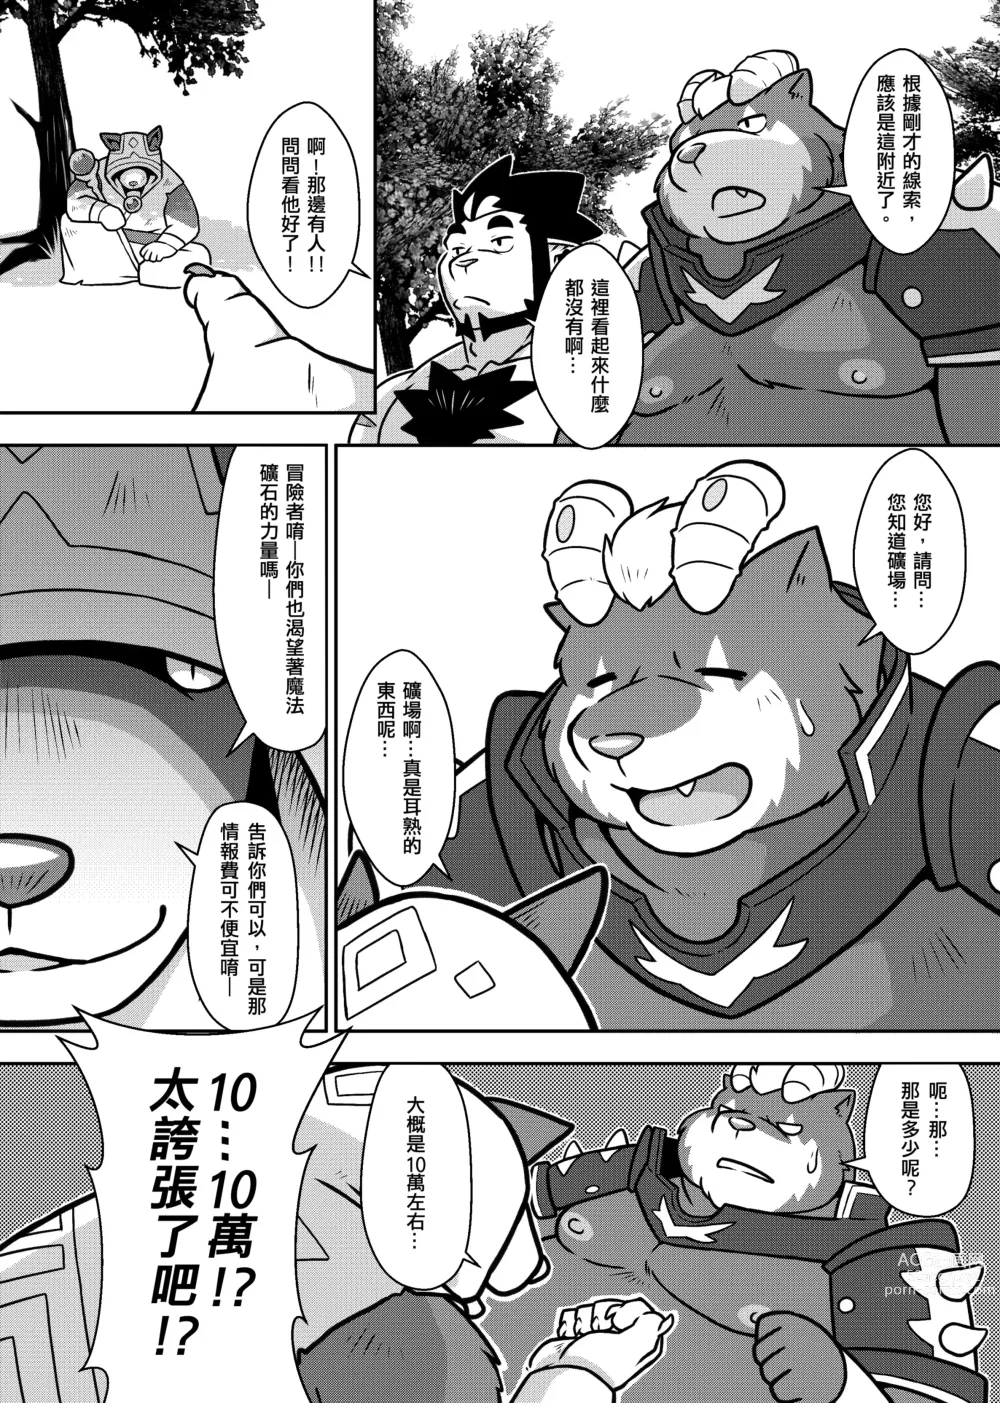 Page 10 of doujinshi 勇者的大小只有魔王塞得下2